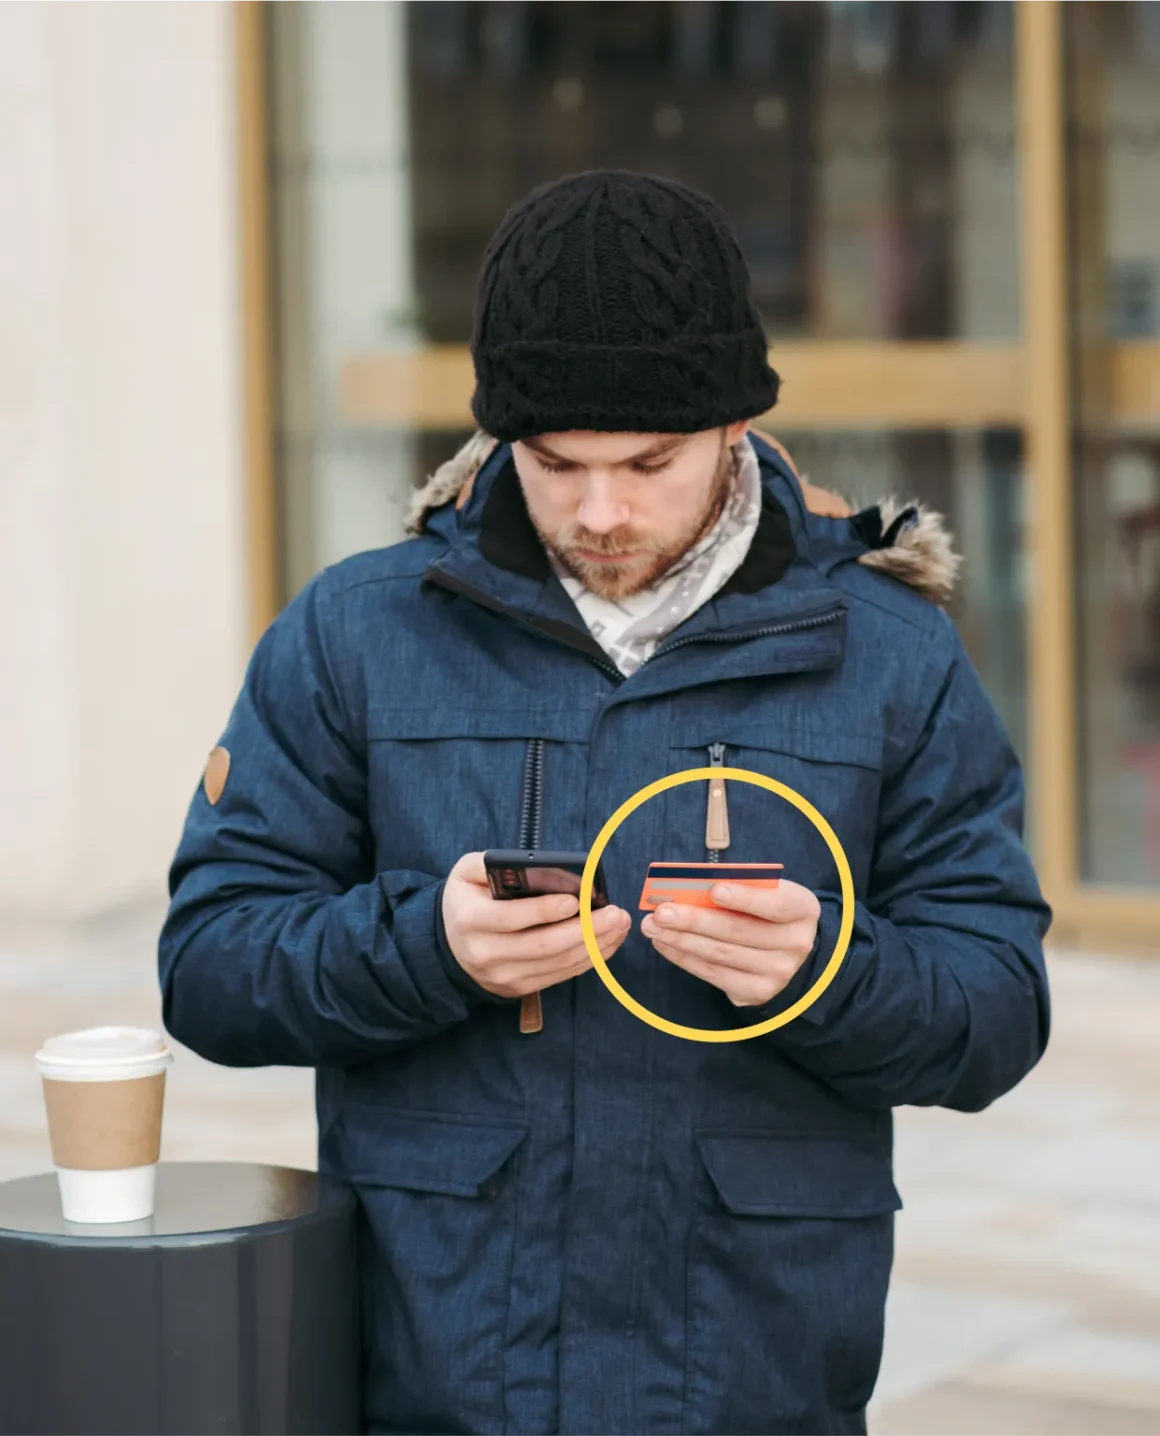 Mann hält Wertgegenstand in der Hand und schaut vertieft aufs Smartphone